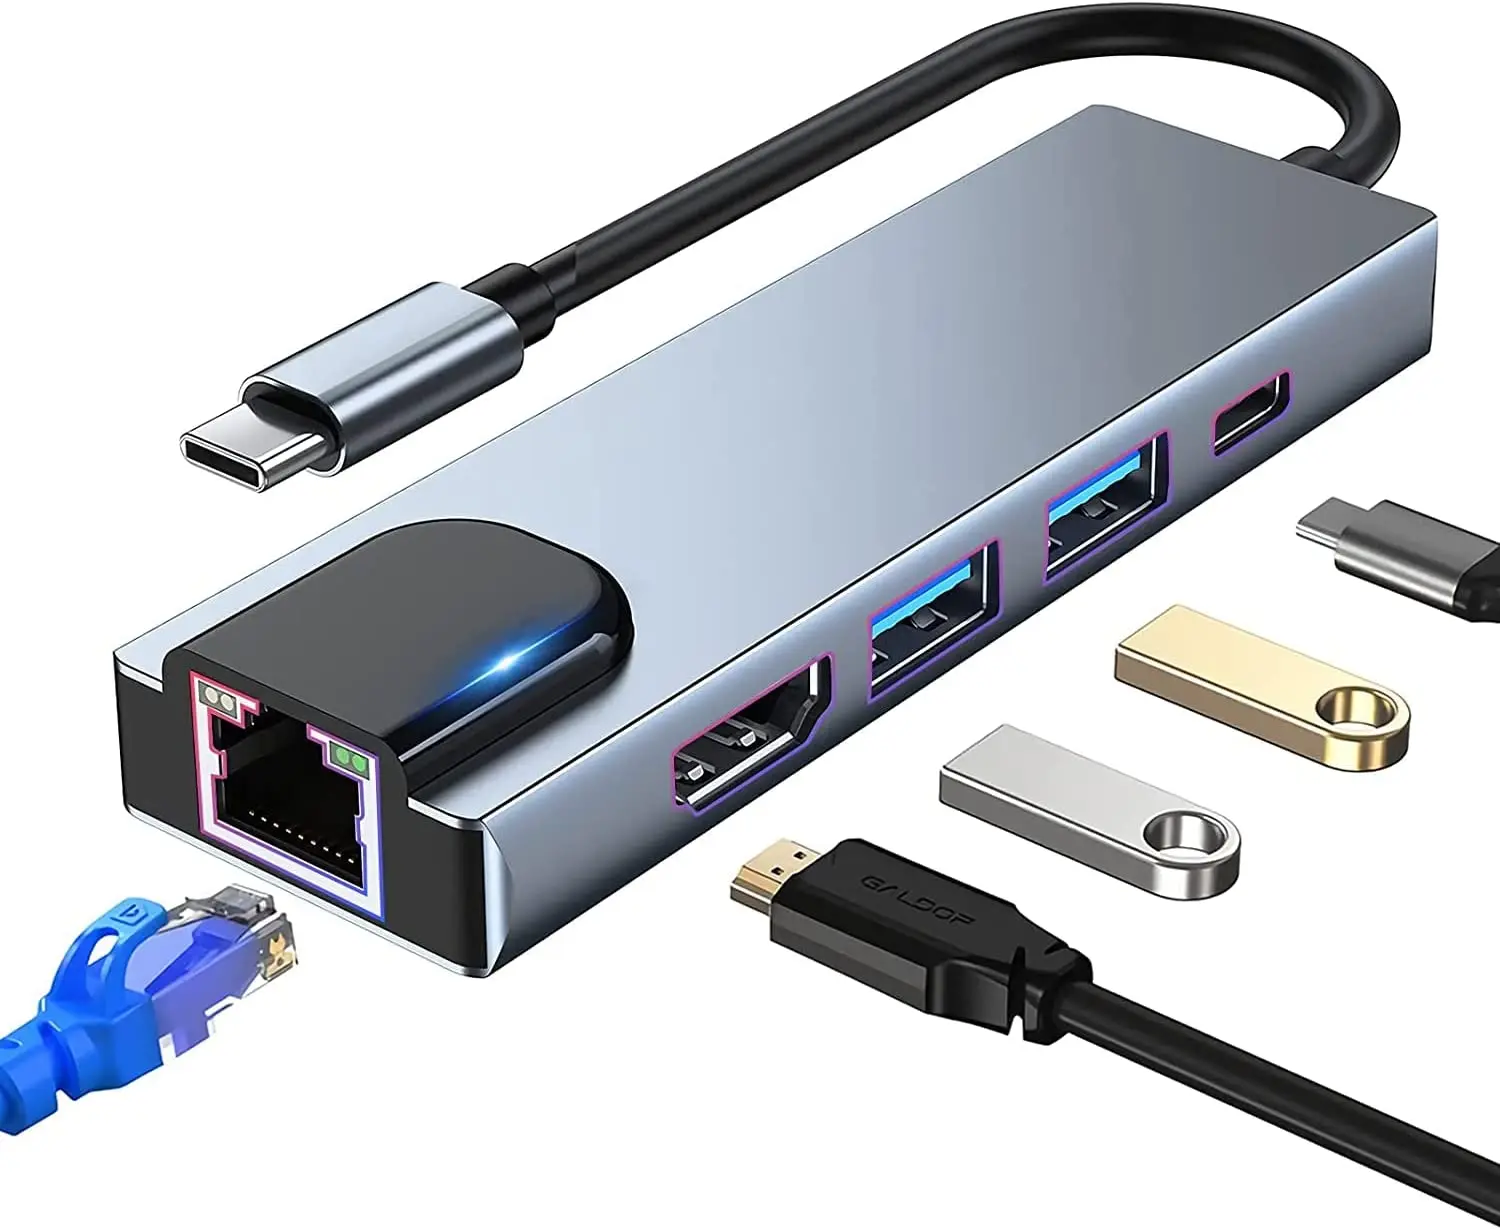 

Adaptador multiporta USB C Hub, 5 em 1 USB C Docking Station com 4K HDMI, RJ45 Ethernet, USB3.0, 100W PD, compatível com MacBoo